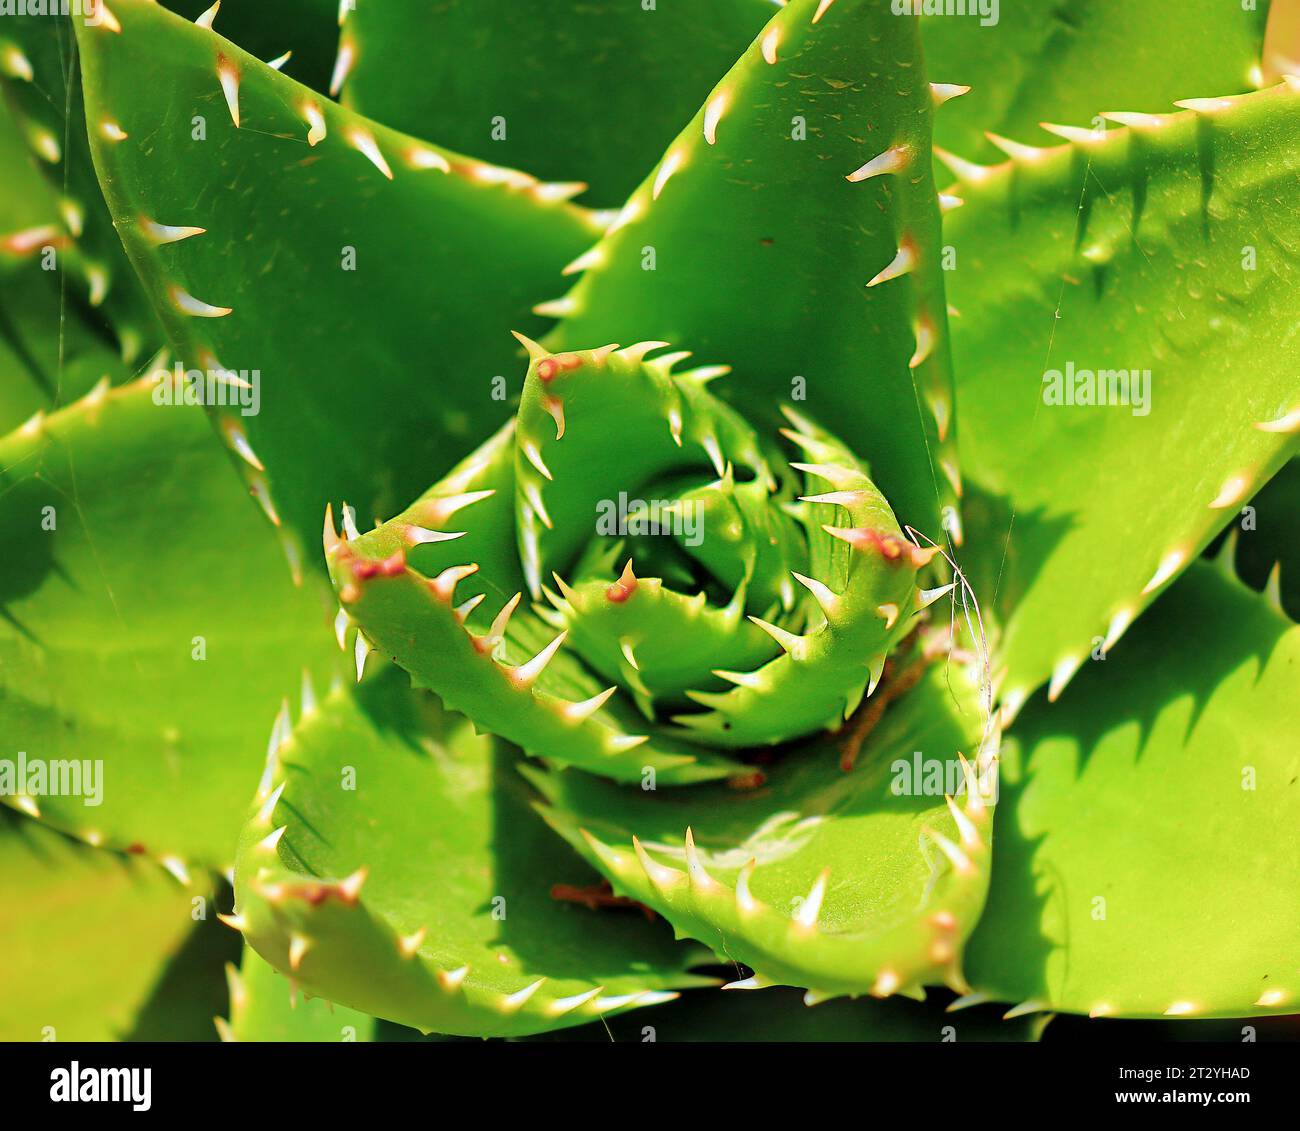 Macro dettaglio della pianta verde foglia di cactus con spine affilate Foto Stock